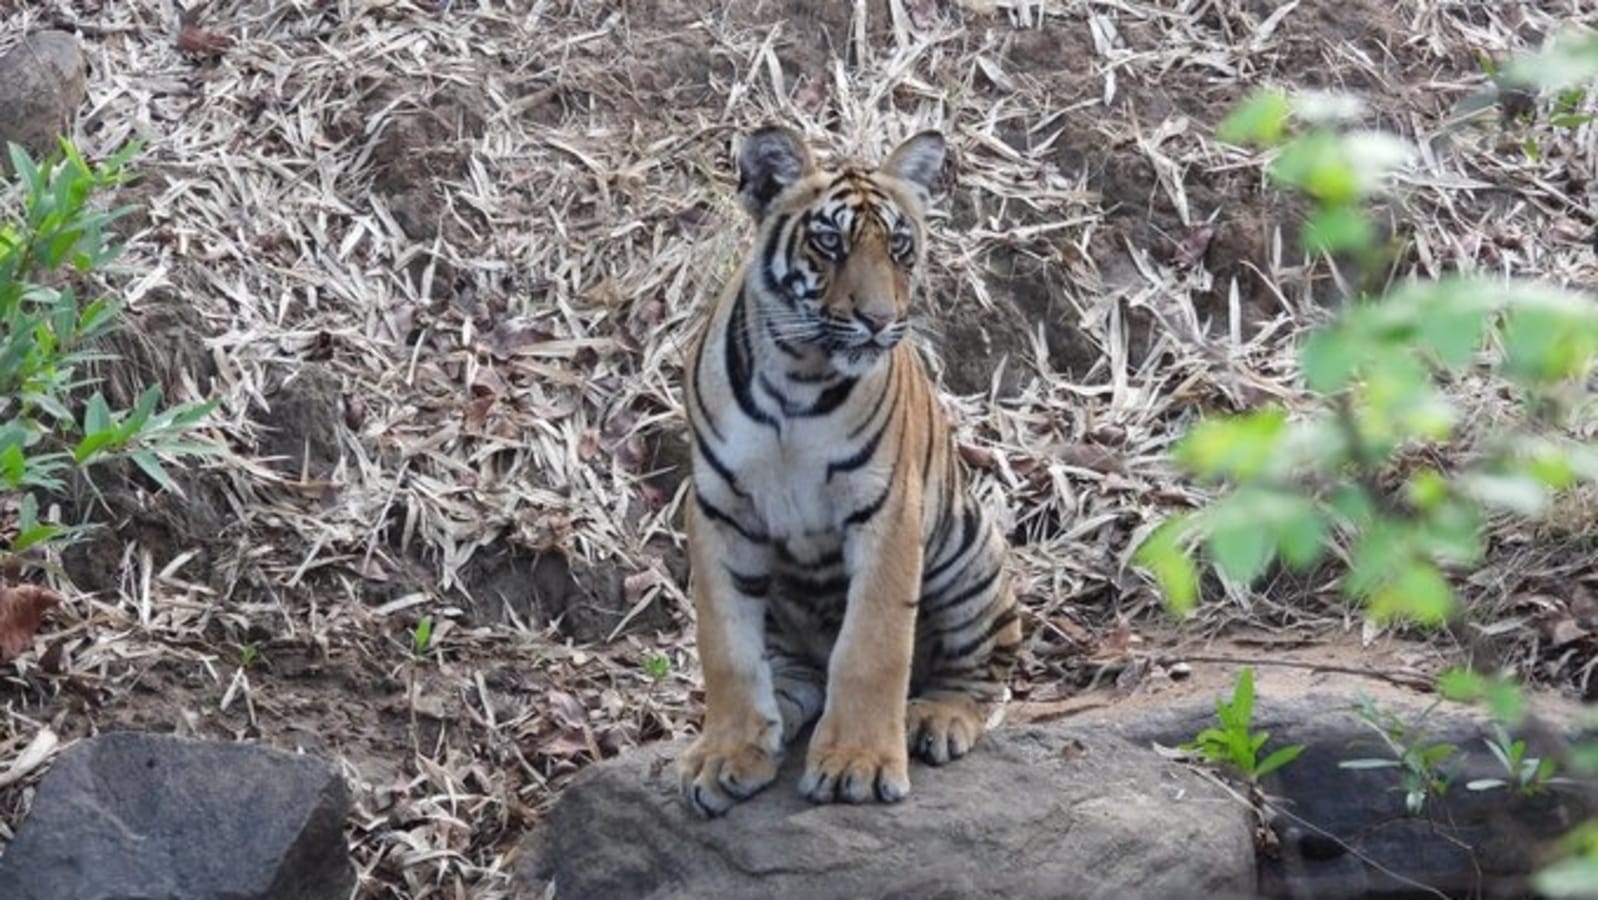 Sachin Tendulkar shares incredible pic of tiger, says this